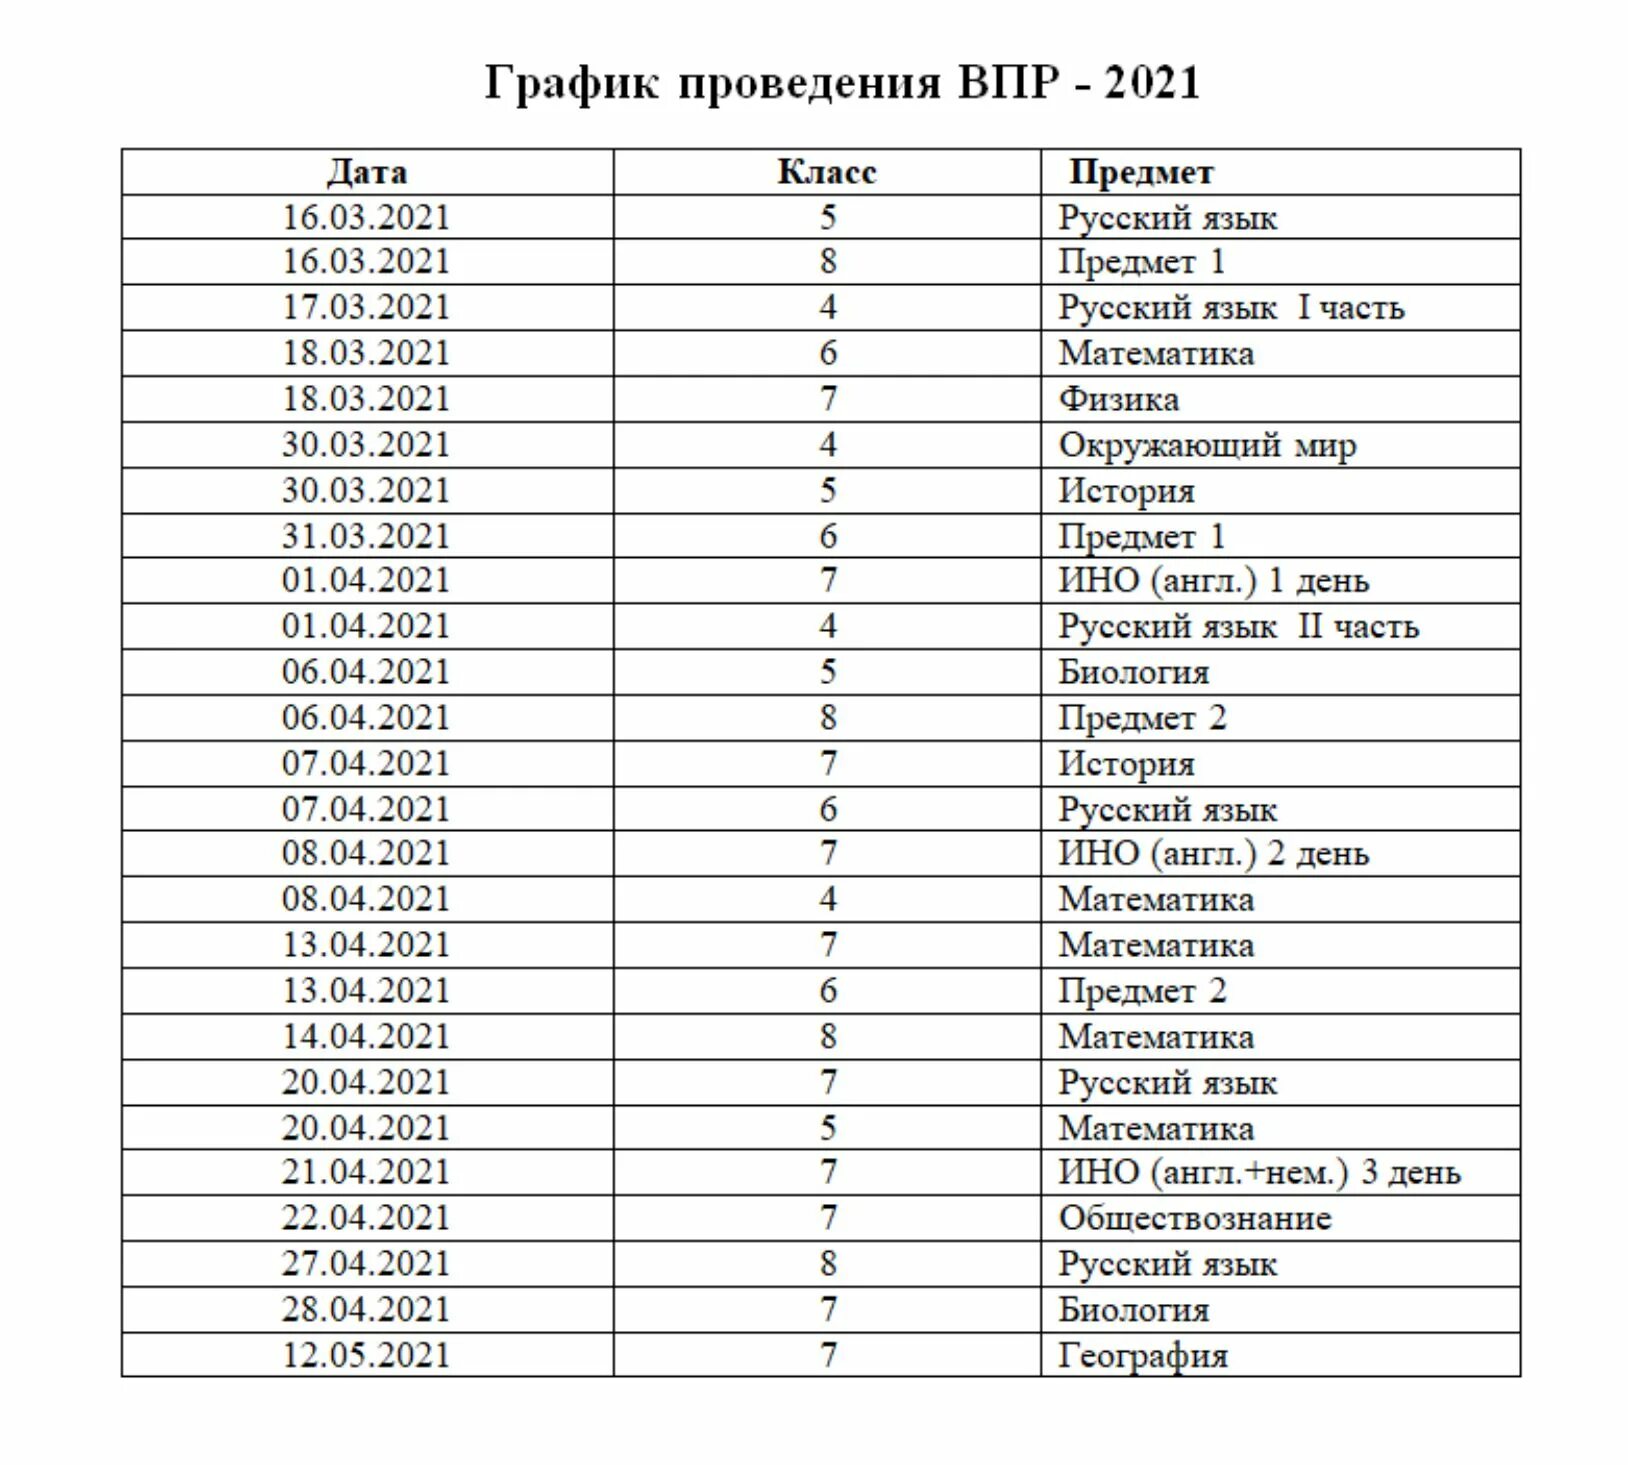 Https www edu gov ru результаты впр. ВПР по регионам. Номера регионов ВПР. Коды ВПР. Код регионов для ВПР.